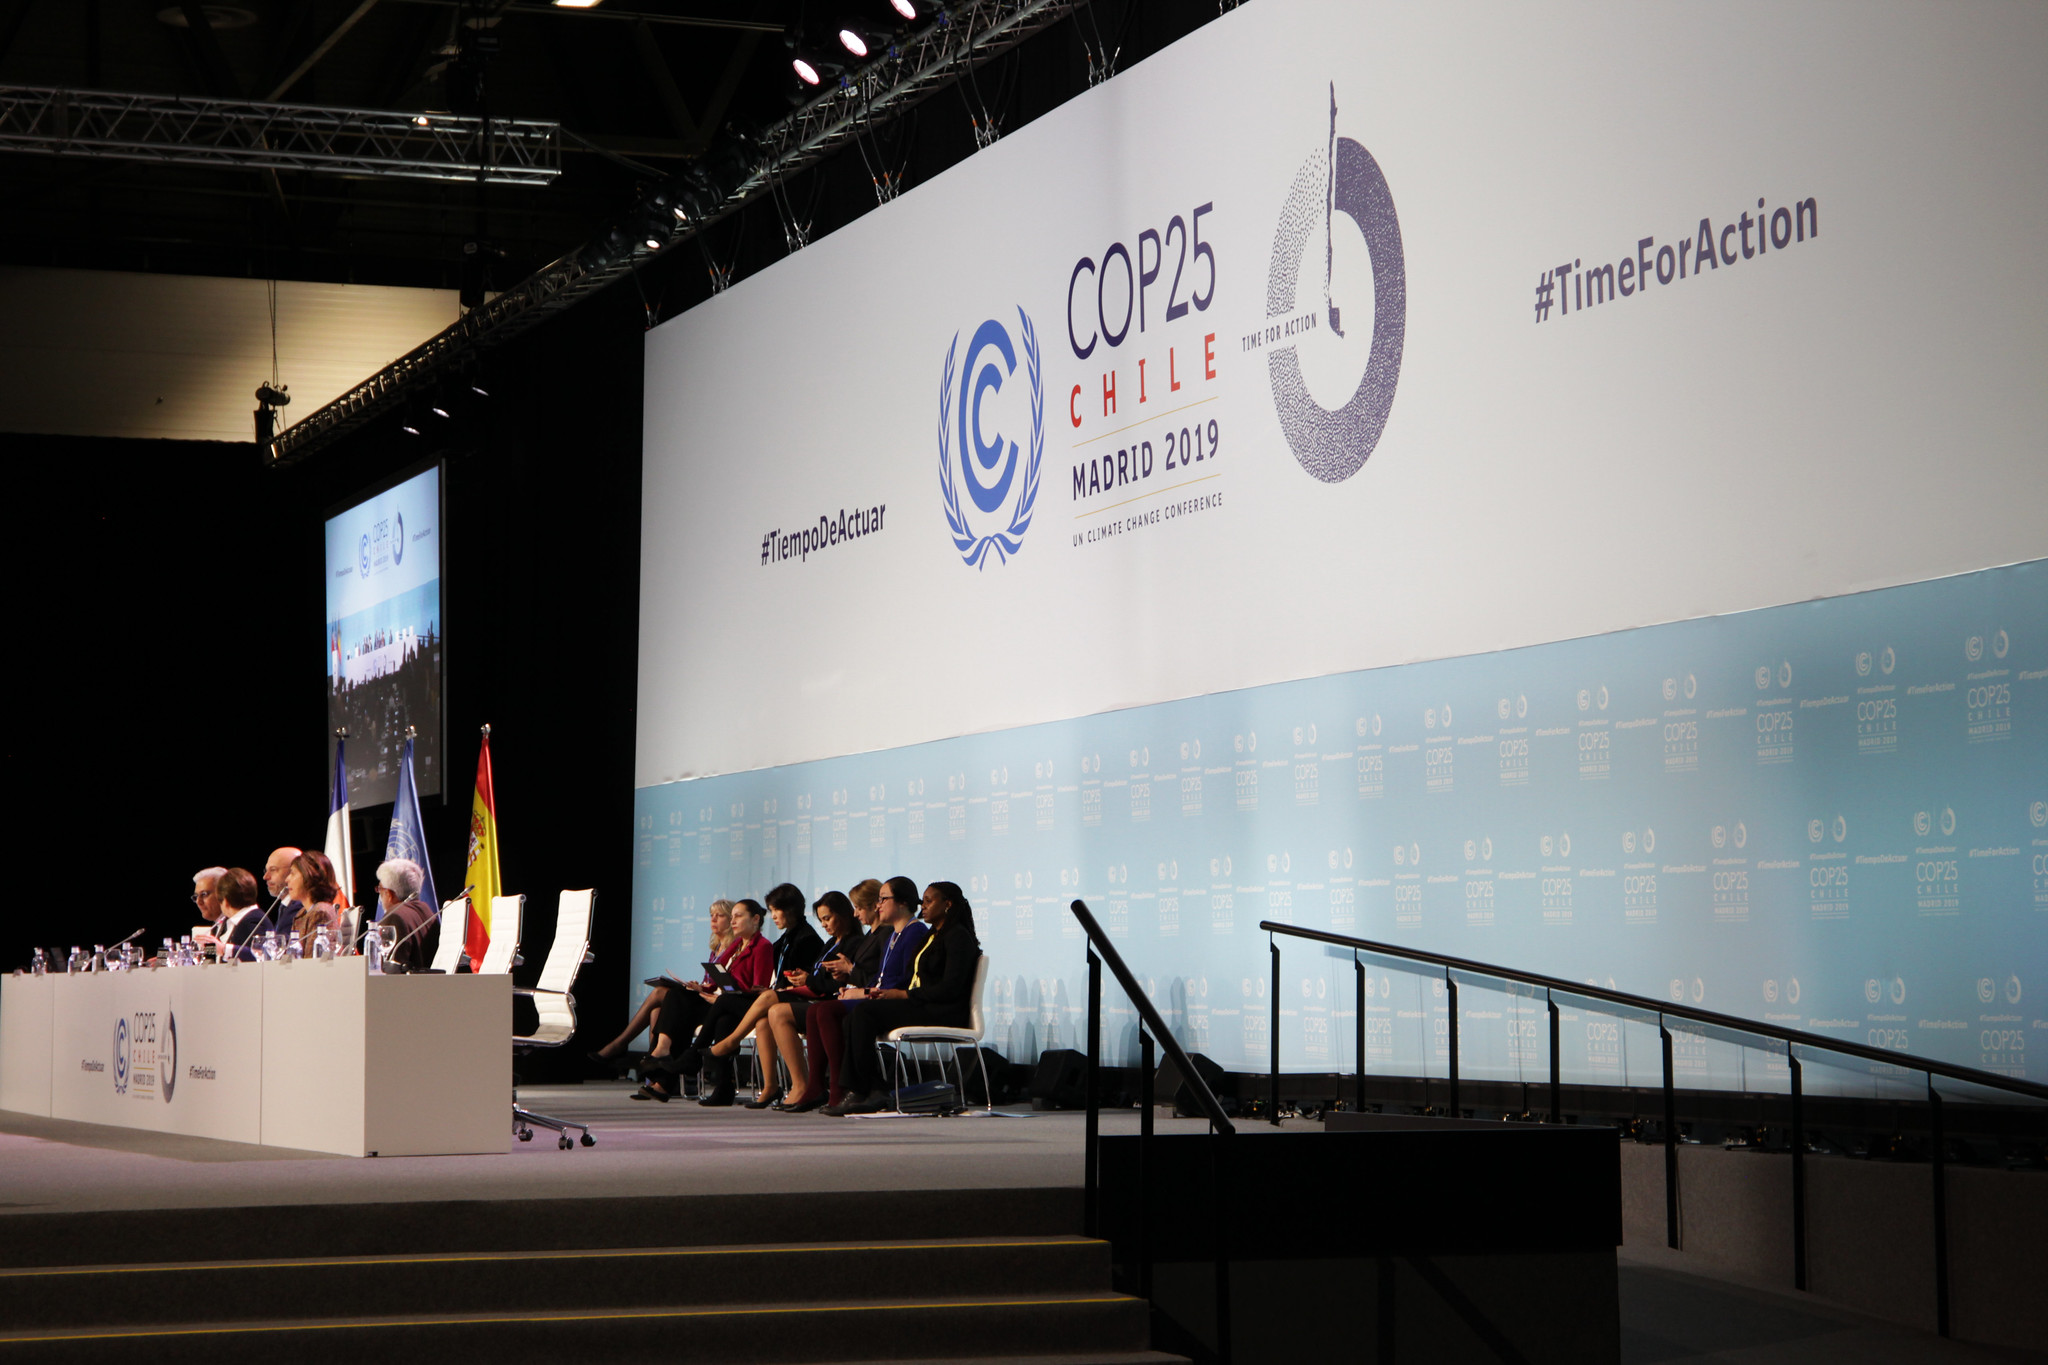 Szczyt COP25 w Madrycie. Źródło: Flickr